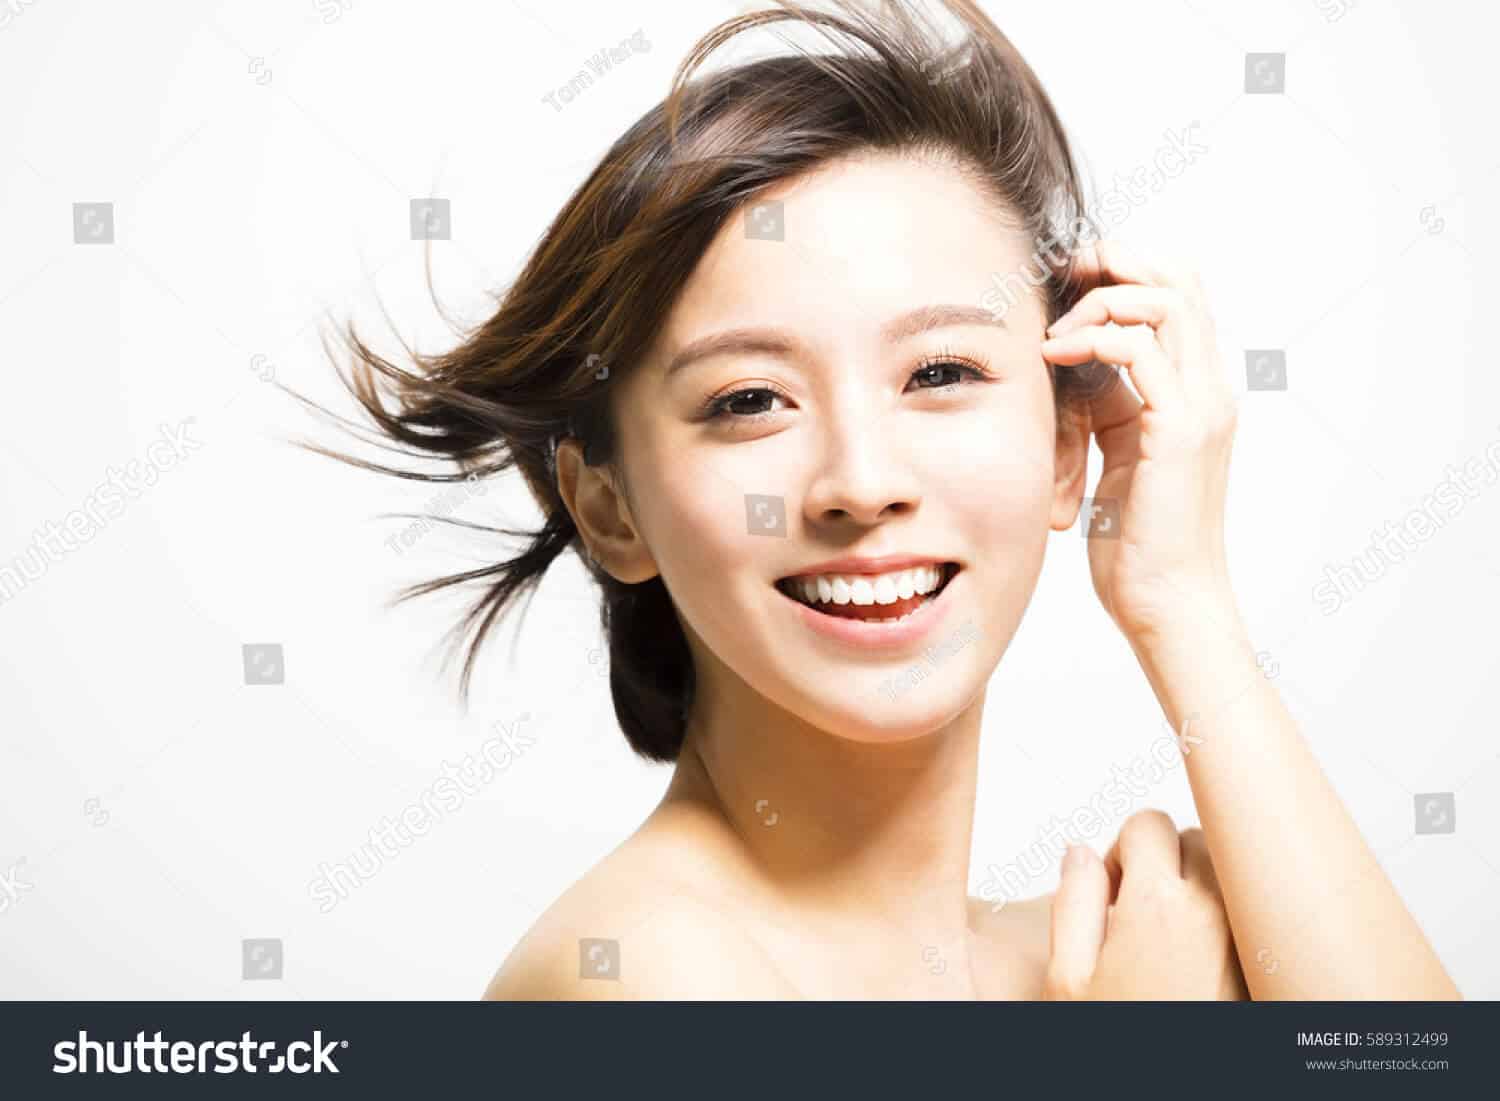 1 triệu 800 ngàn hình ảnh cô gái trẻ Châu Á chất lượng cao trên Shutterstock